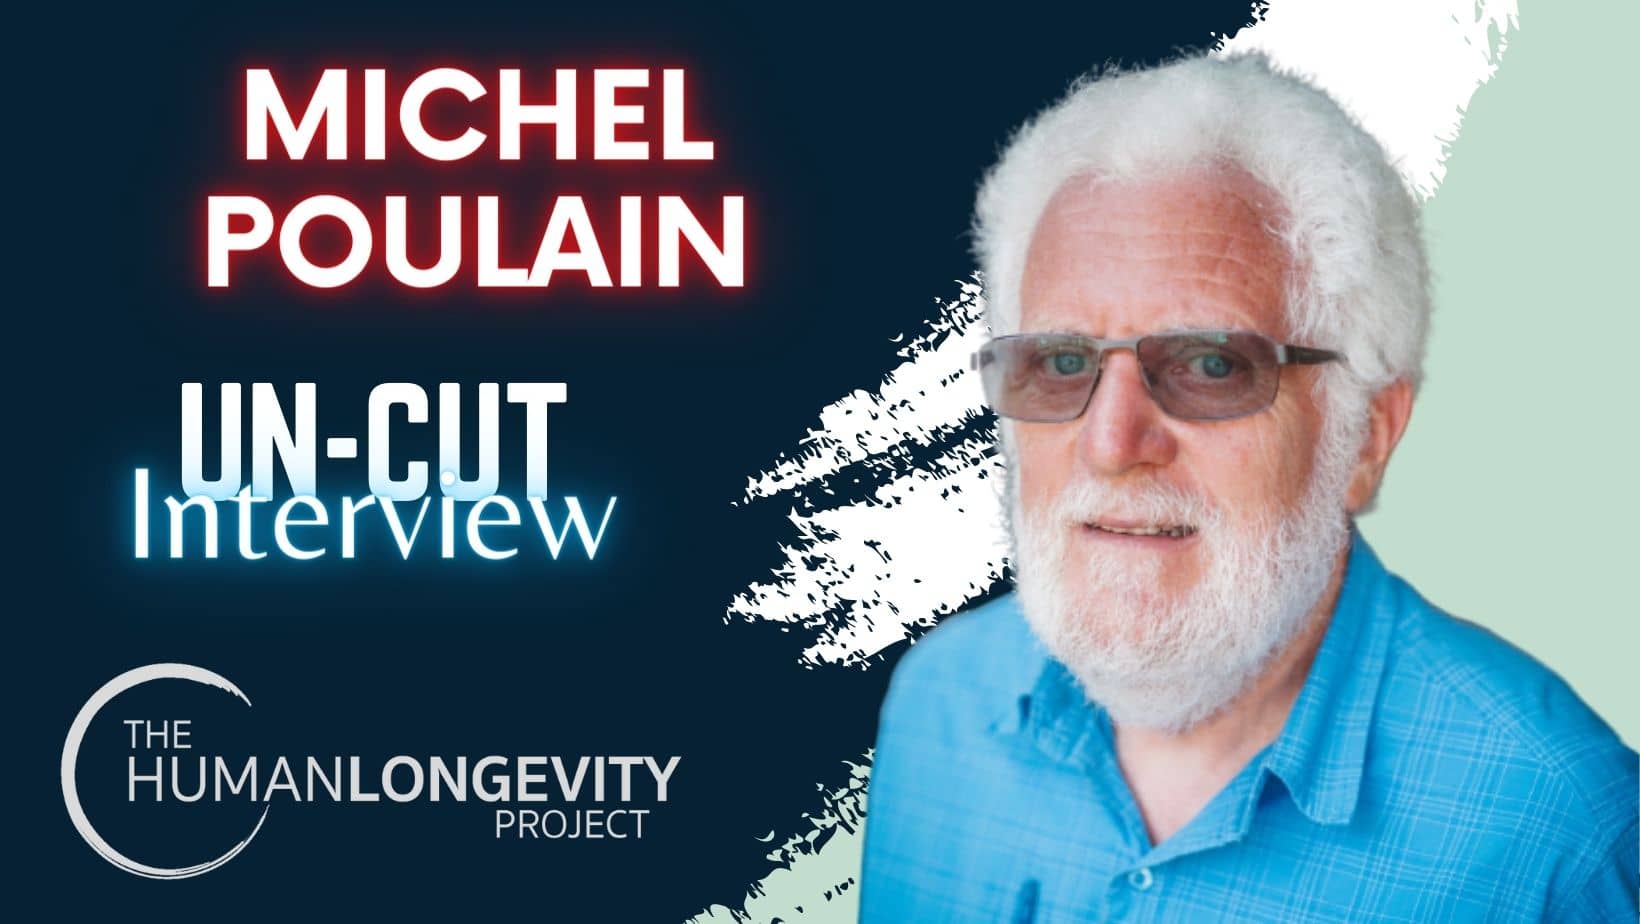 Human Longevity Project Uncut Interview With Michel Poulain